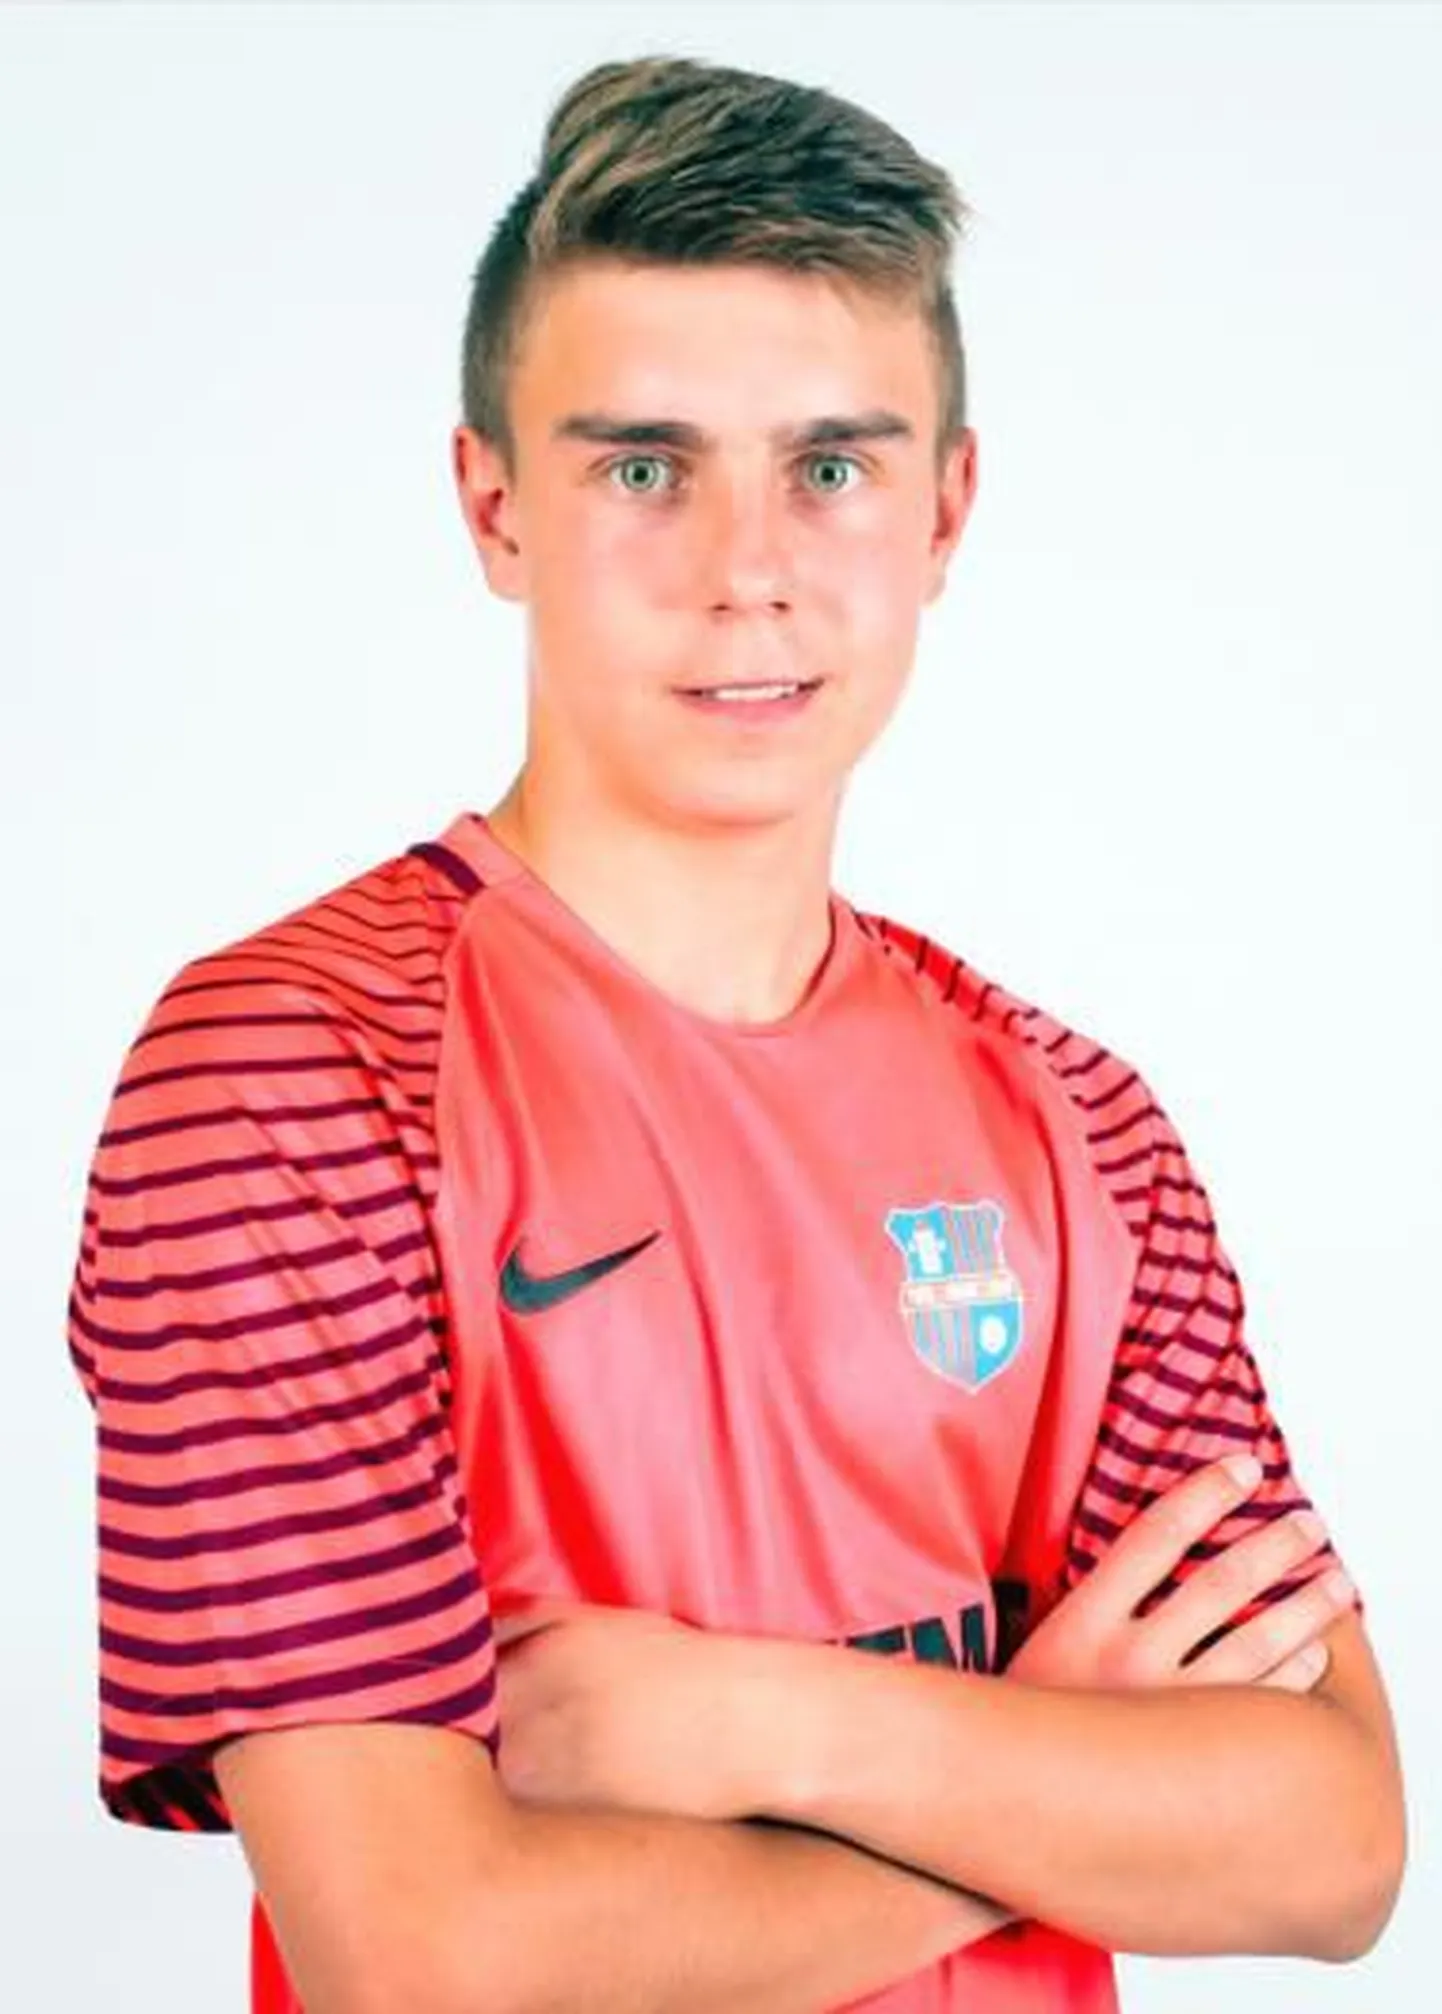 Вратарь сборной Эстонии U19 Рене Мерило - воспитанник кохтла-ярвеского ФК "Ярве", который сейчас входит в Пайдескую городскую команду.